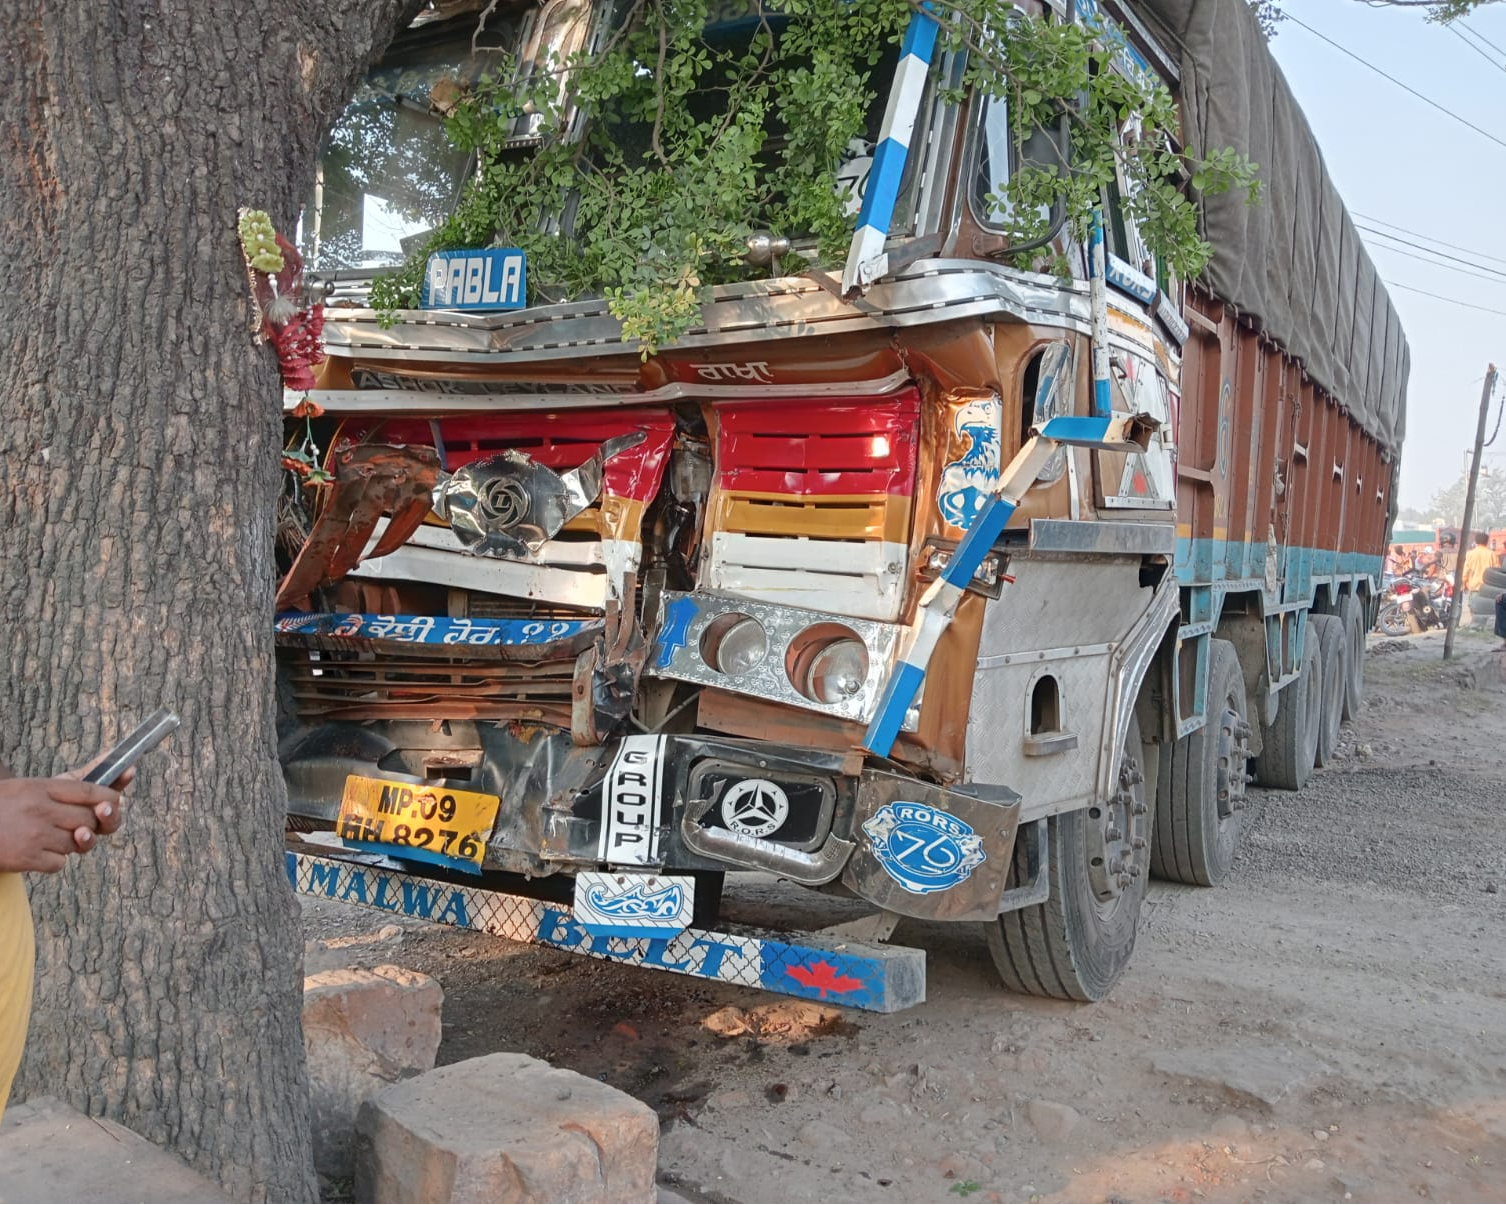 Two killed, one injured as truck hits bike in Odisha’s Keonjhar